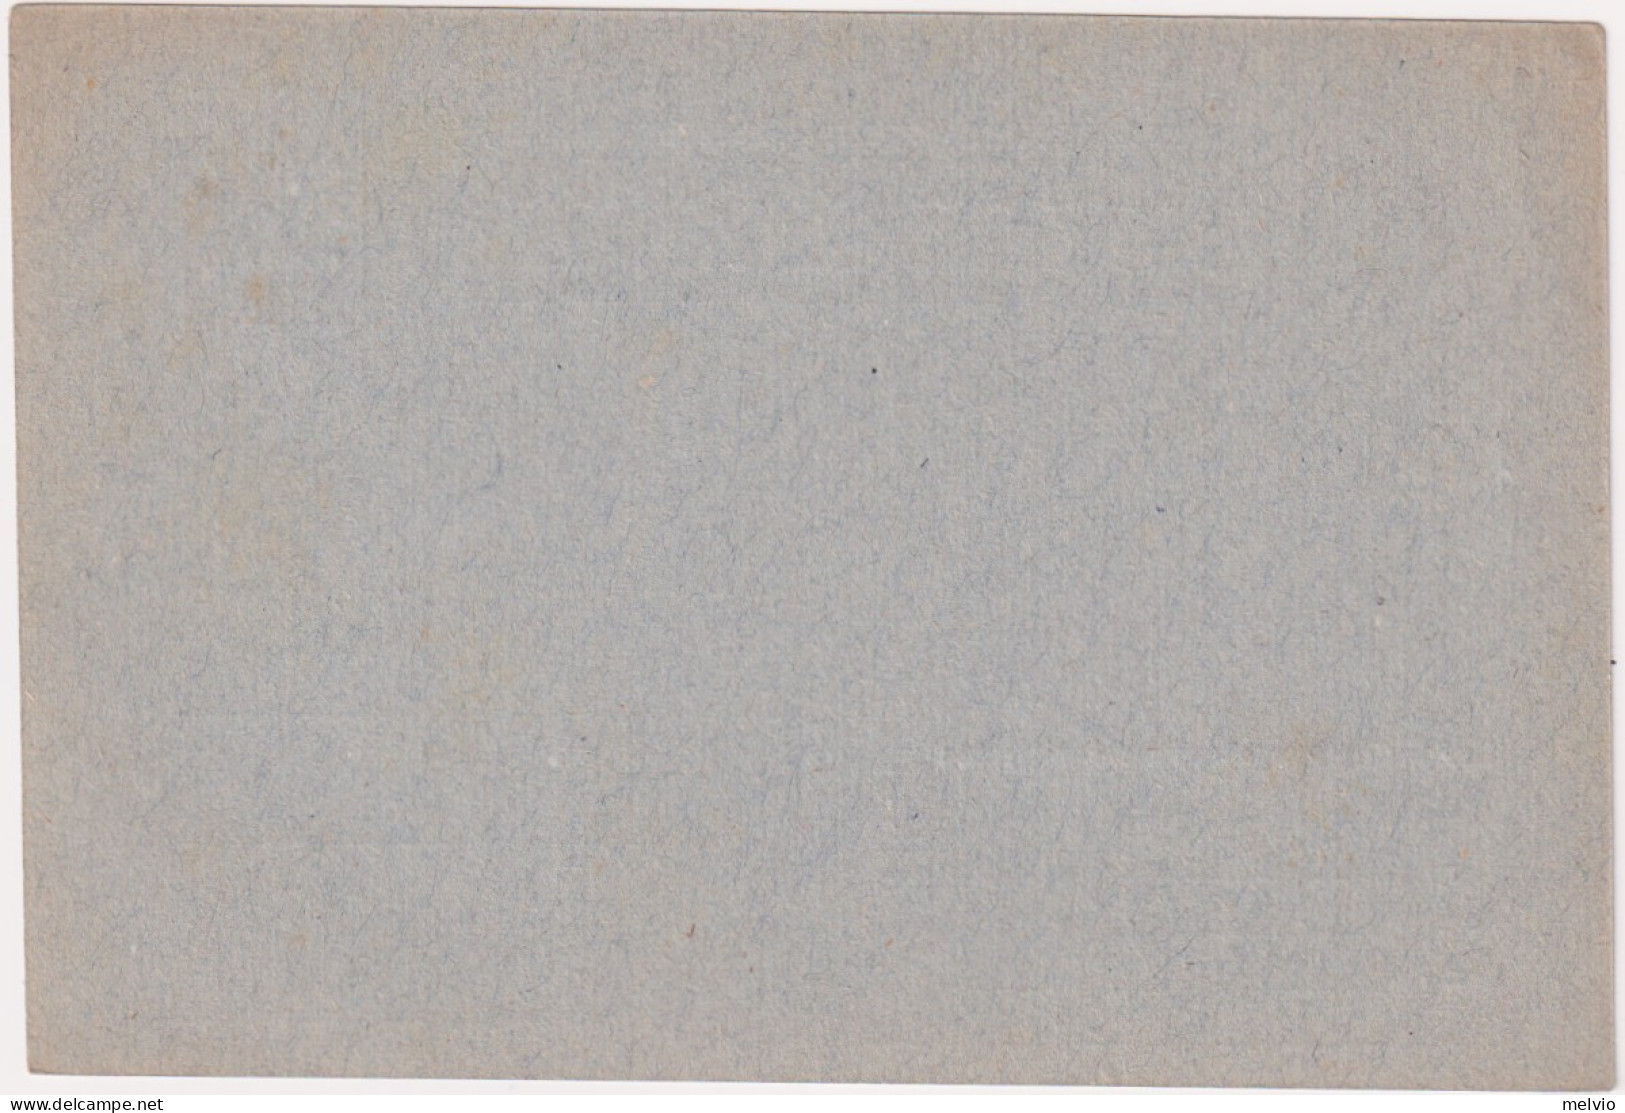 1945-Provvisoria Cartolina Postale Per Le Forze Armate Cartiglio Grande Centrato - Entero Postal